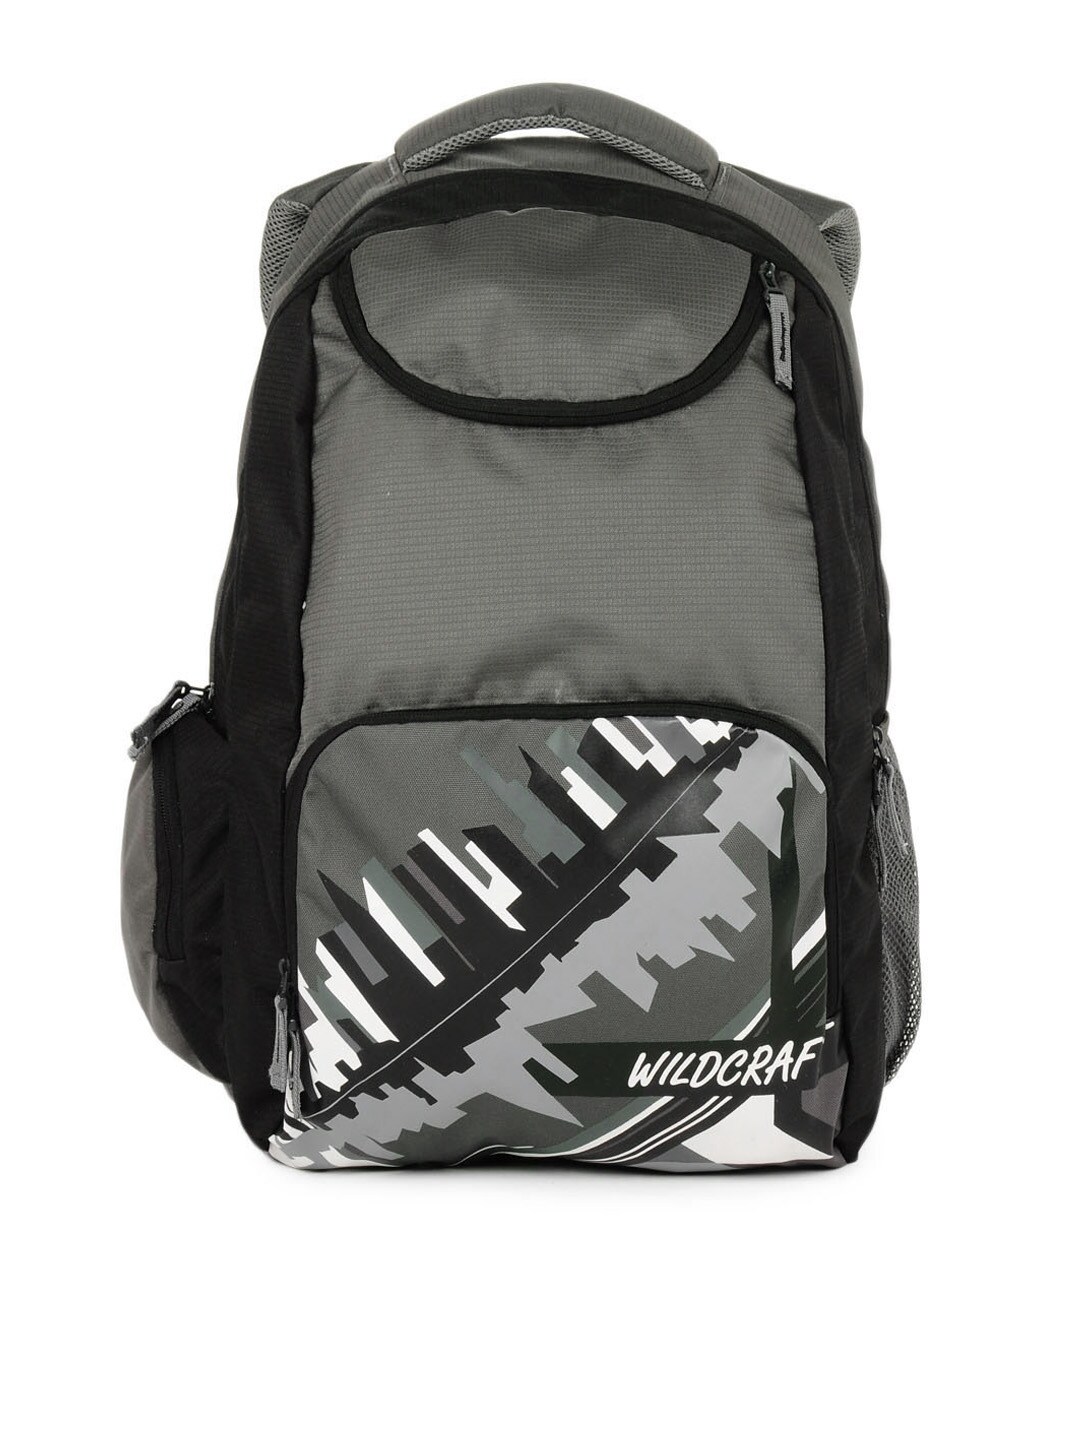 Wildcraft Unisex Grey Printed Laptop Backpack